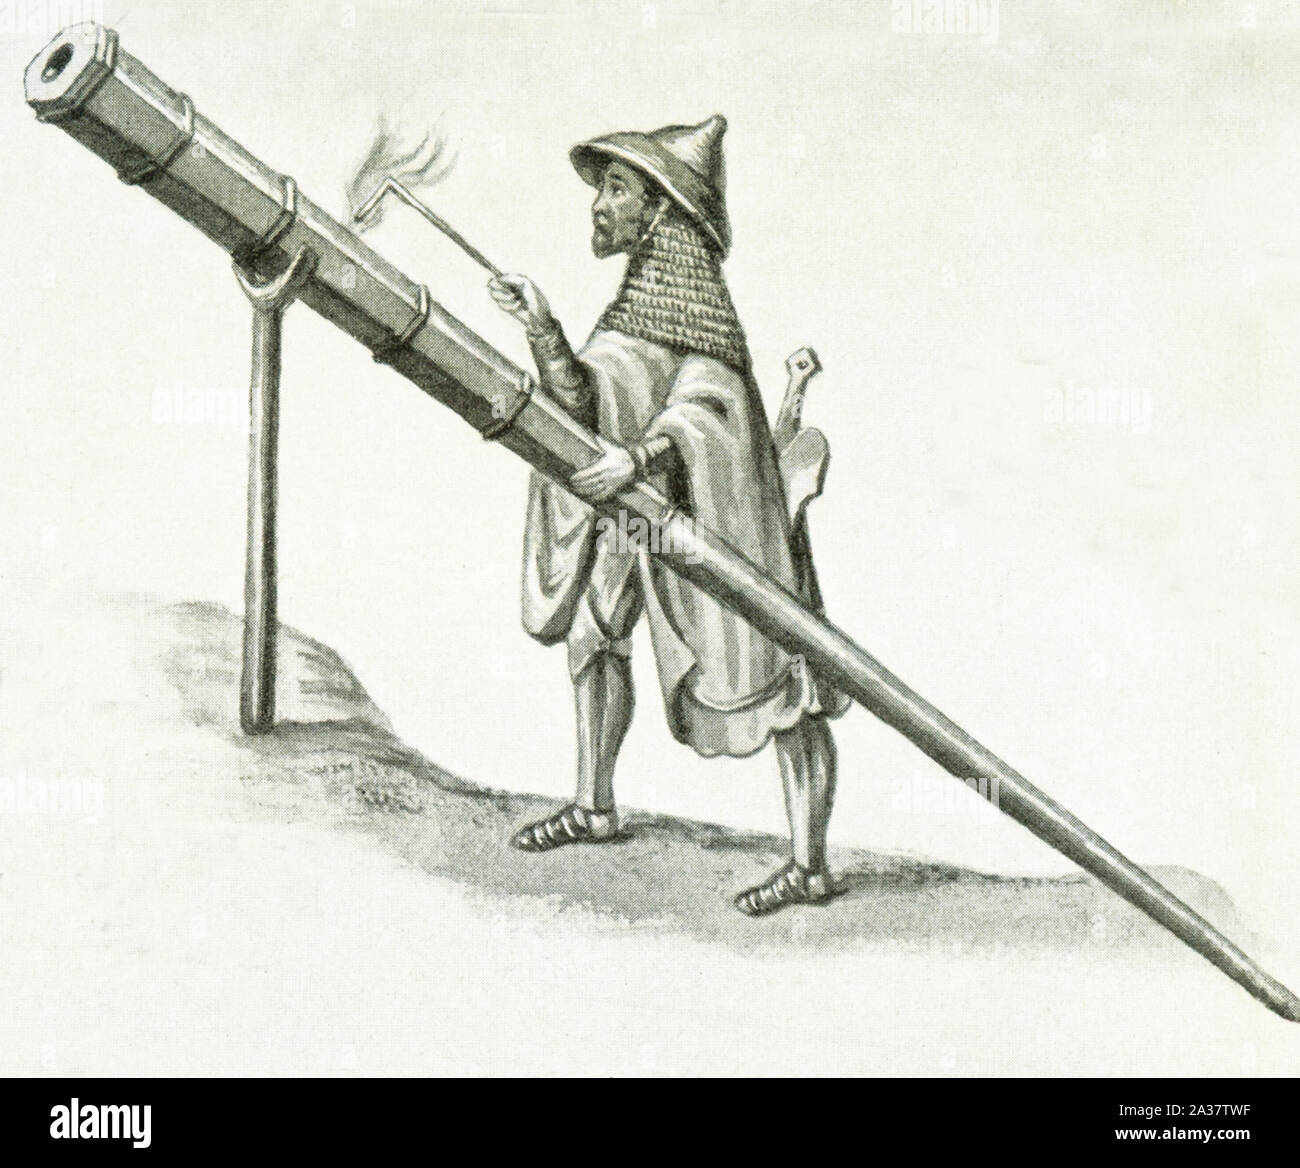 Esta imagen de un arma de fuego que data de alrededor de 1405. Se disparó desde un stand. Se mencionó y se ilustran en el libro de Konrad Kyeser Bellifortis publicado c. 1405. Foto de stock